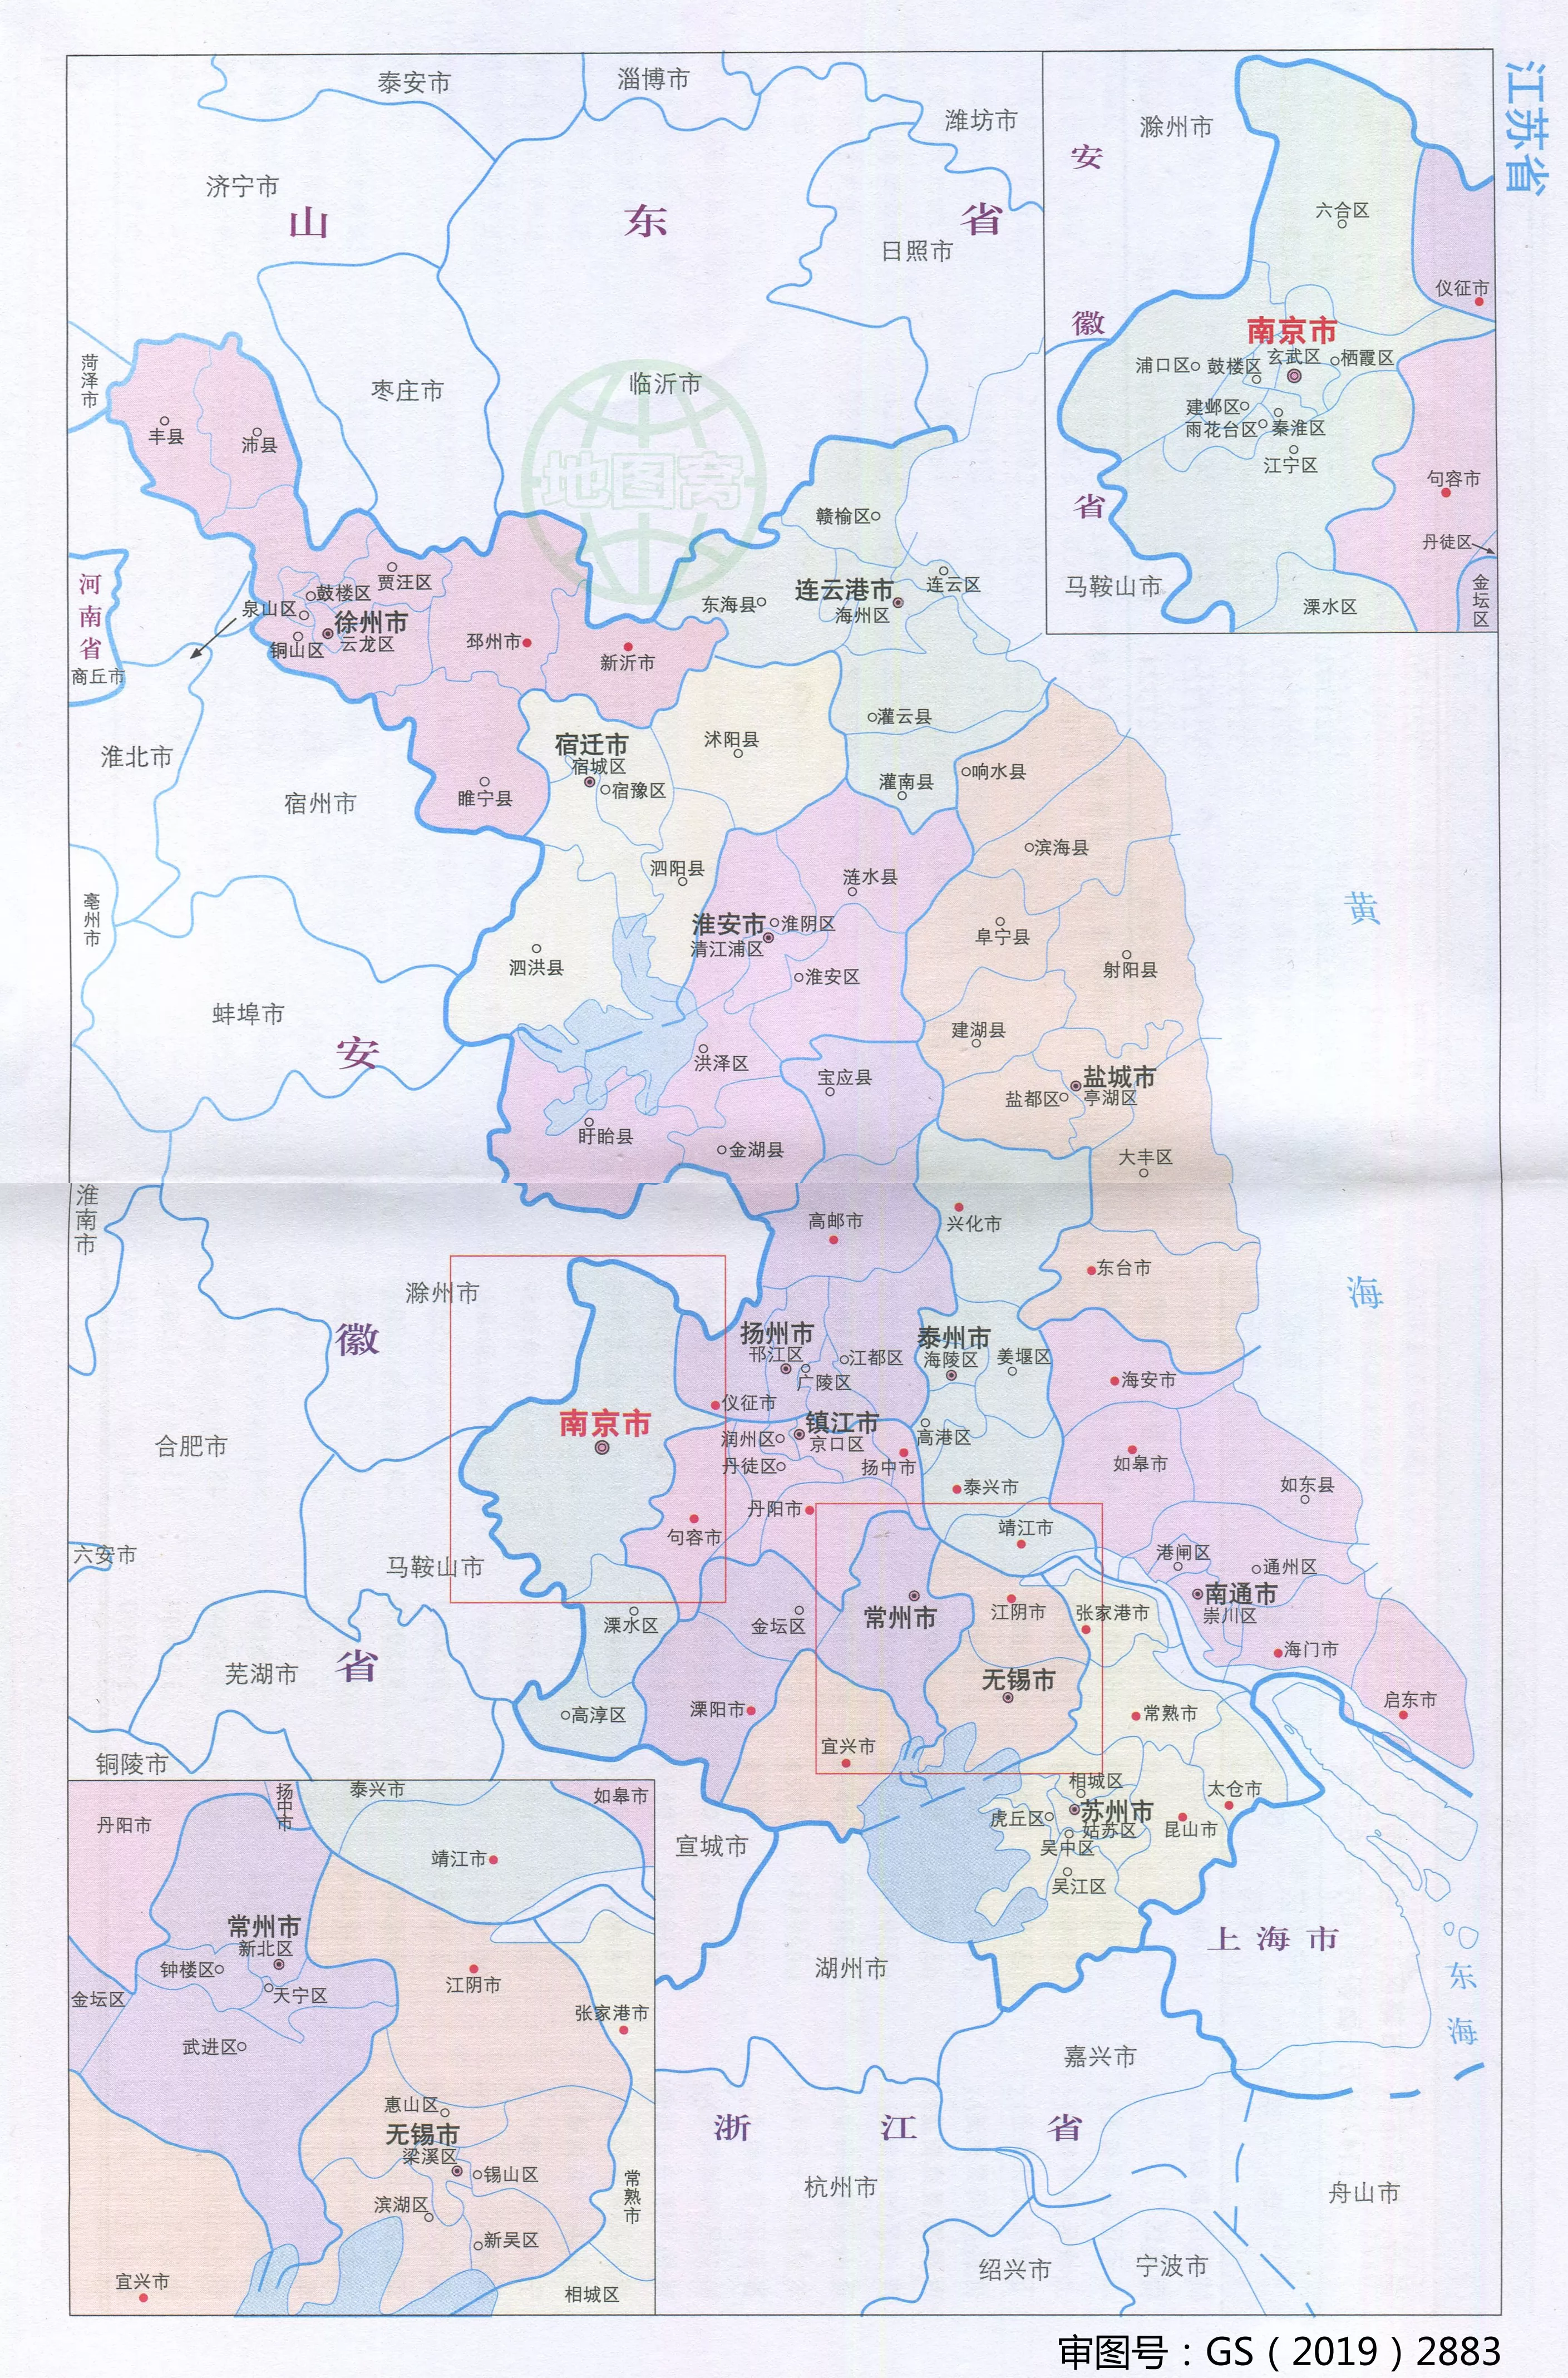 江苏省行政区划 - 苏南、苏中、苏北 【地图可视化】_哔哩哔哩_bilibili